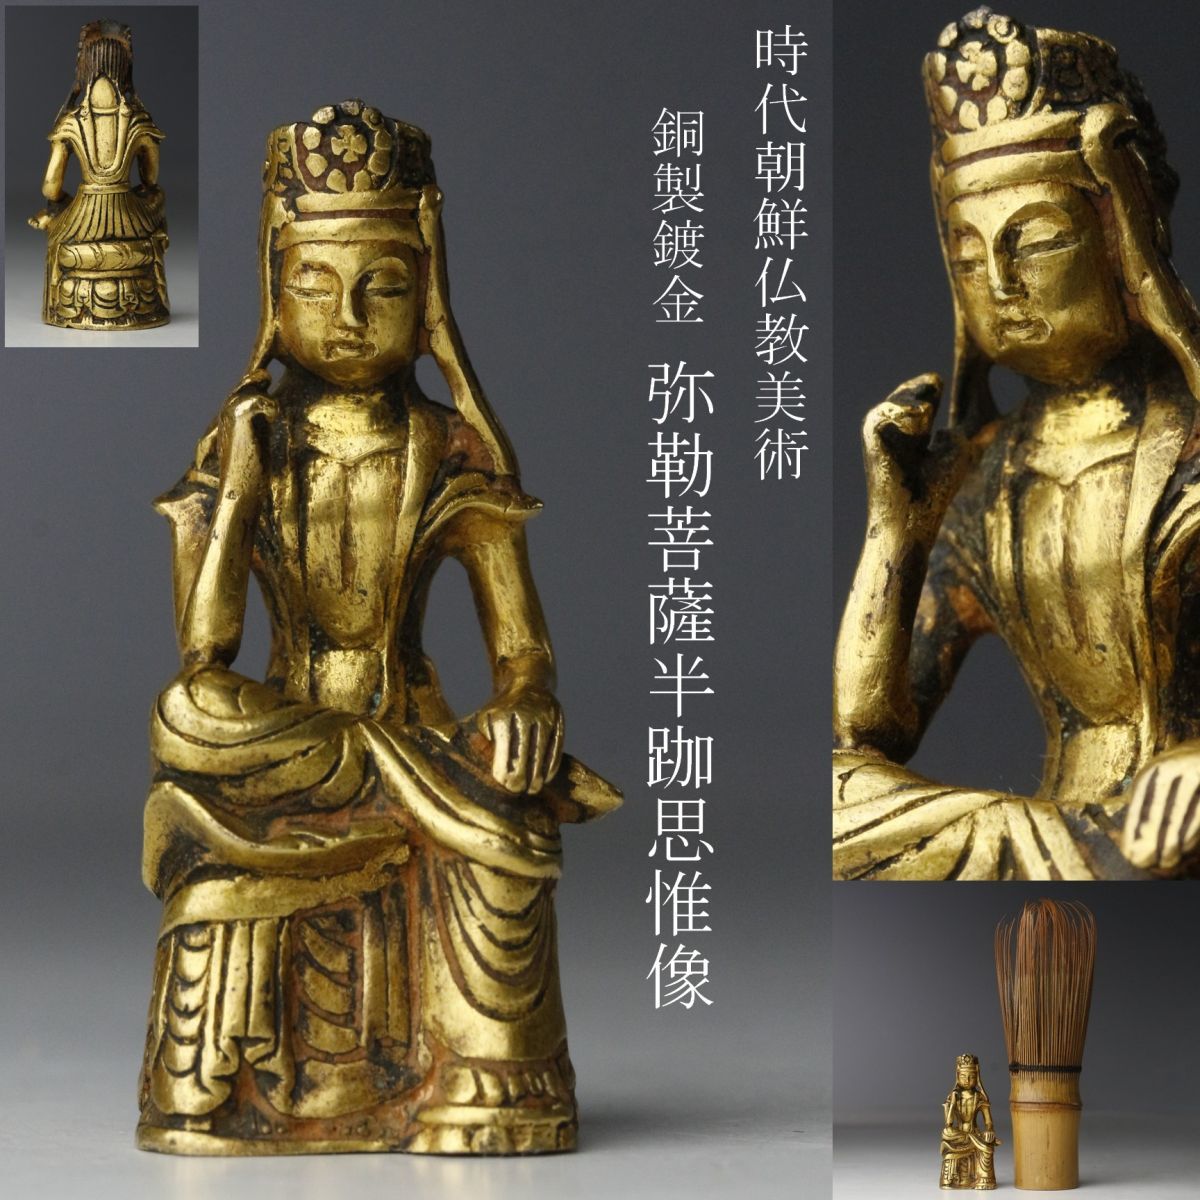 Yahoo!オークション -「高麗 仏教美術」(仏像) (銅製)の落札相場・落札価格